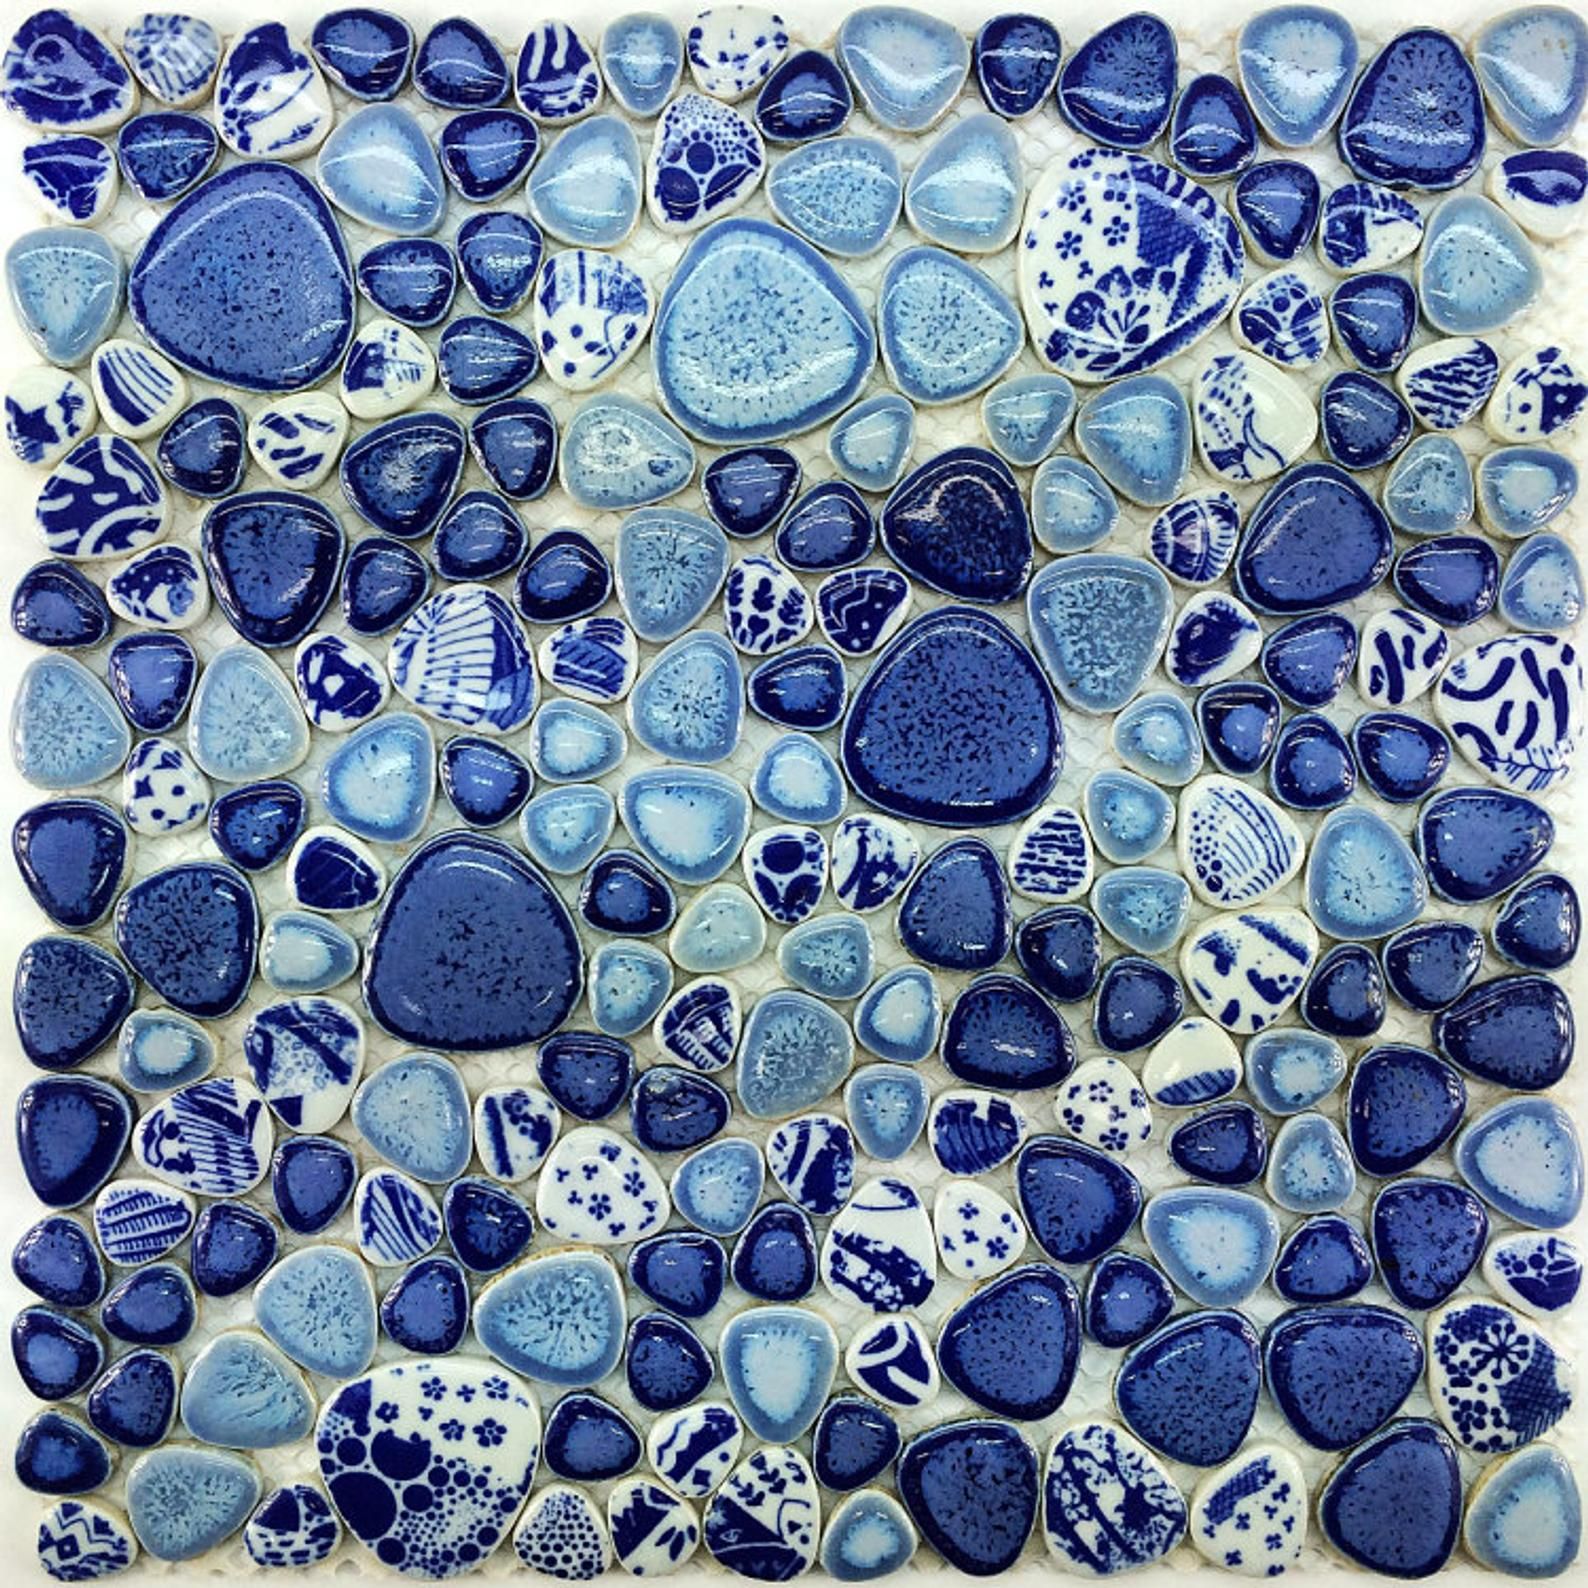 2021 Glazed Blue White Porcelain Wall Tile PPMT043 Pebble Porcelain Ceramic Heart Shape Mosaic